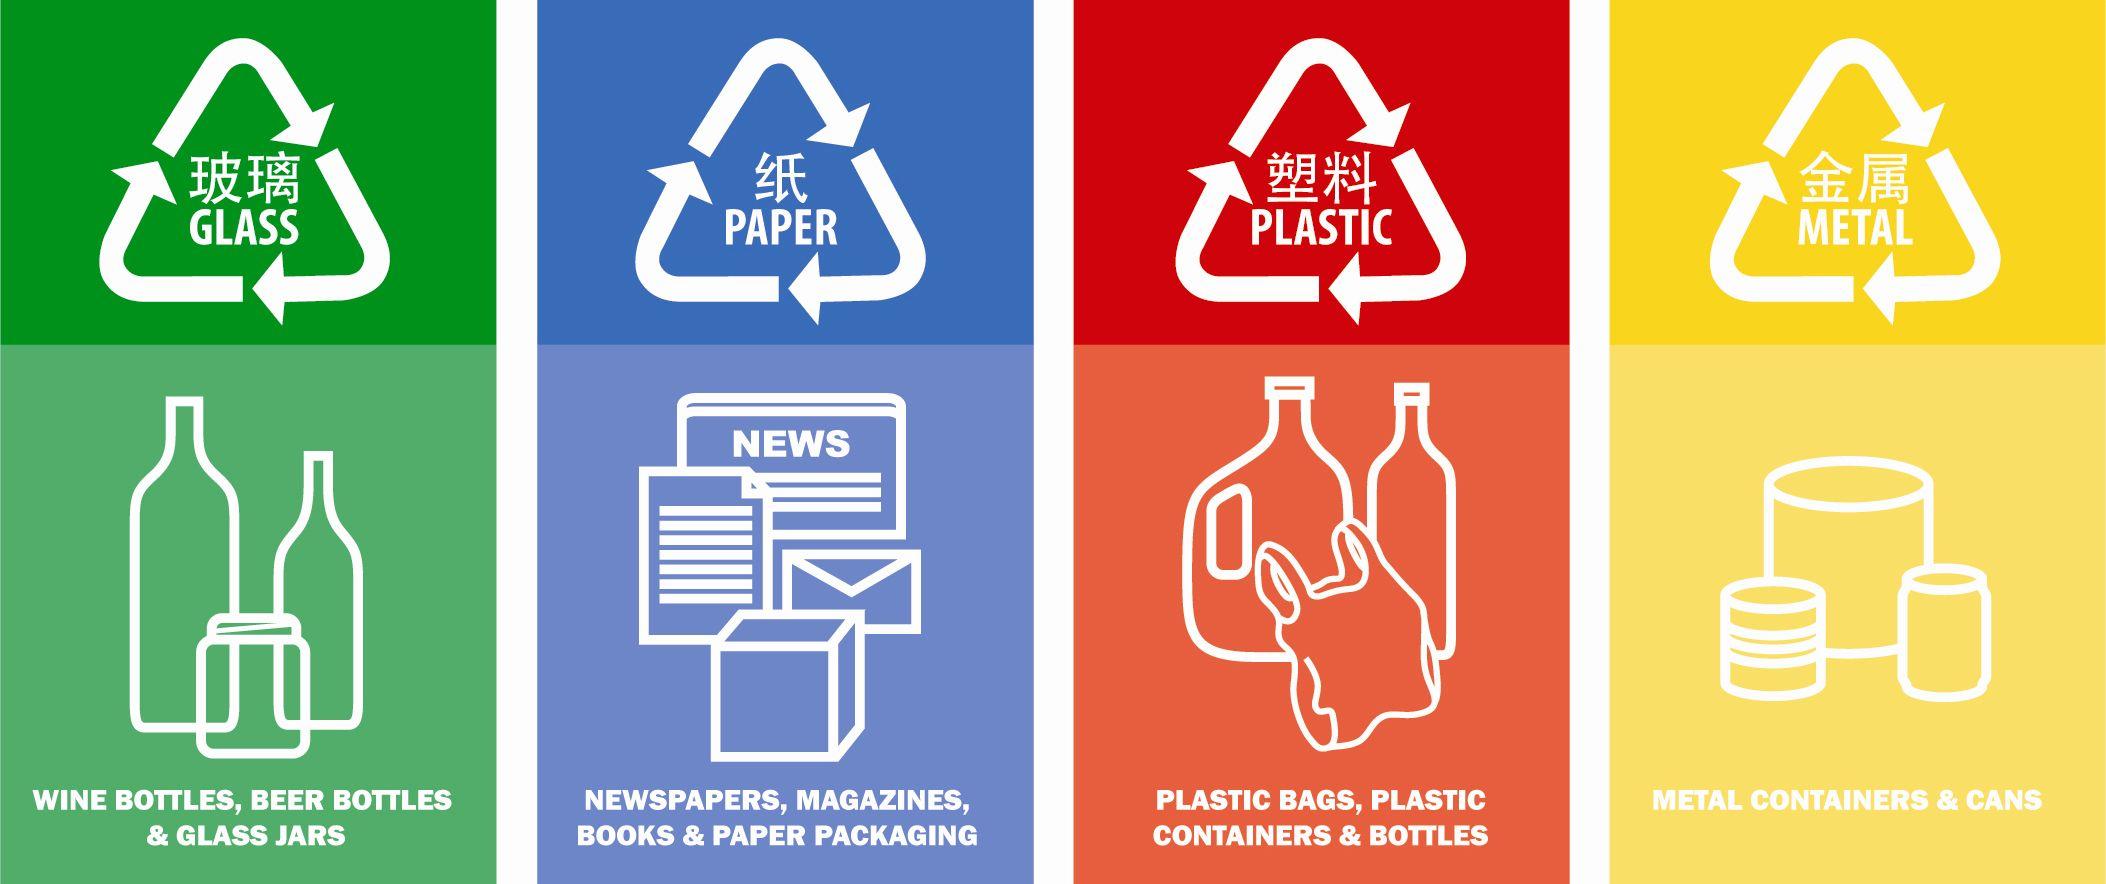 Recycle Bin Logo - Recycling Home